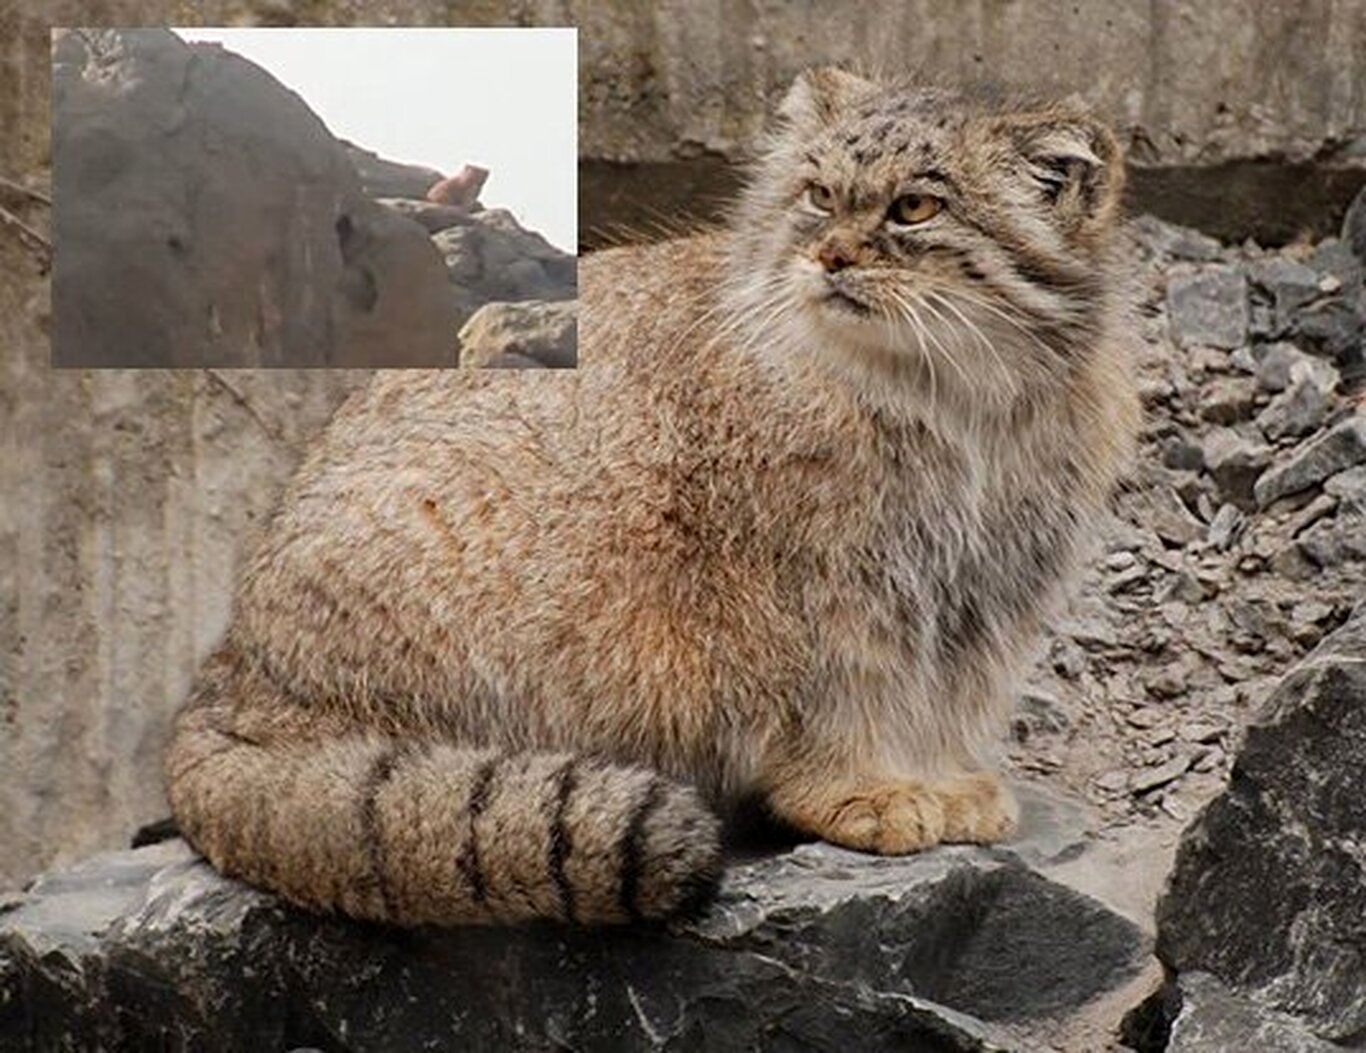 مشاهده گربه پالاس در منطقه حفاظت شده کالمند بهادران مهریز